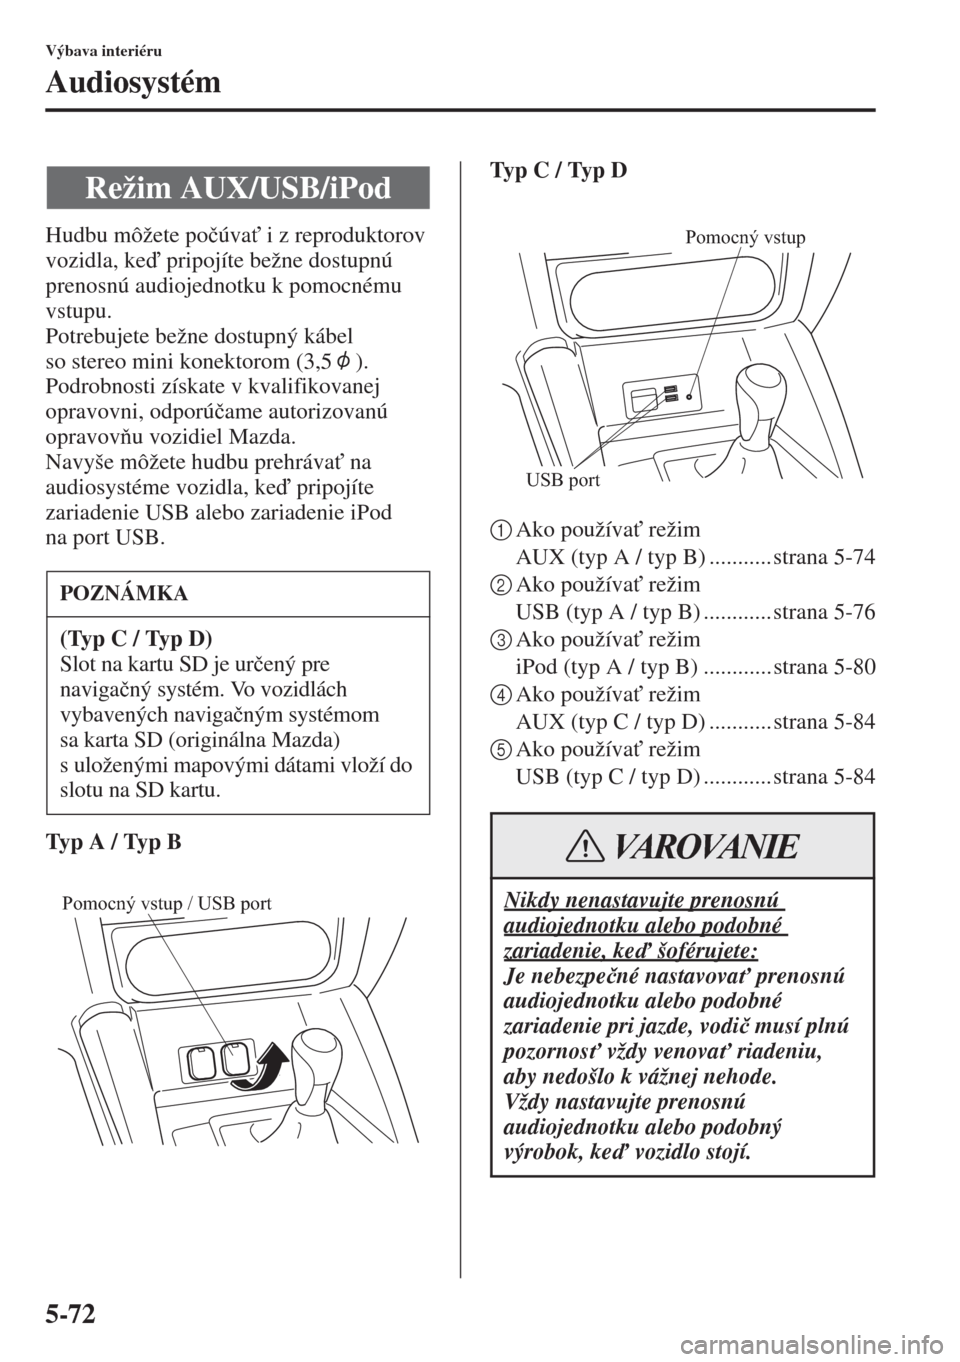 MAZDA MODEL CX-5 2015  Užívateľská príručka (in Slovak) 5-72
Výbava interiéru
Audiosystém
Hudbu môžete po�þúva" i z reproduktorov 
vozidla, ke pripojíte bežne dostupnú 
prenosnú audiojednotku k pomocnému 
vstupu.
Potrebujete bežne dostupný